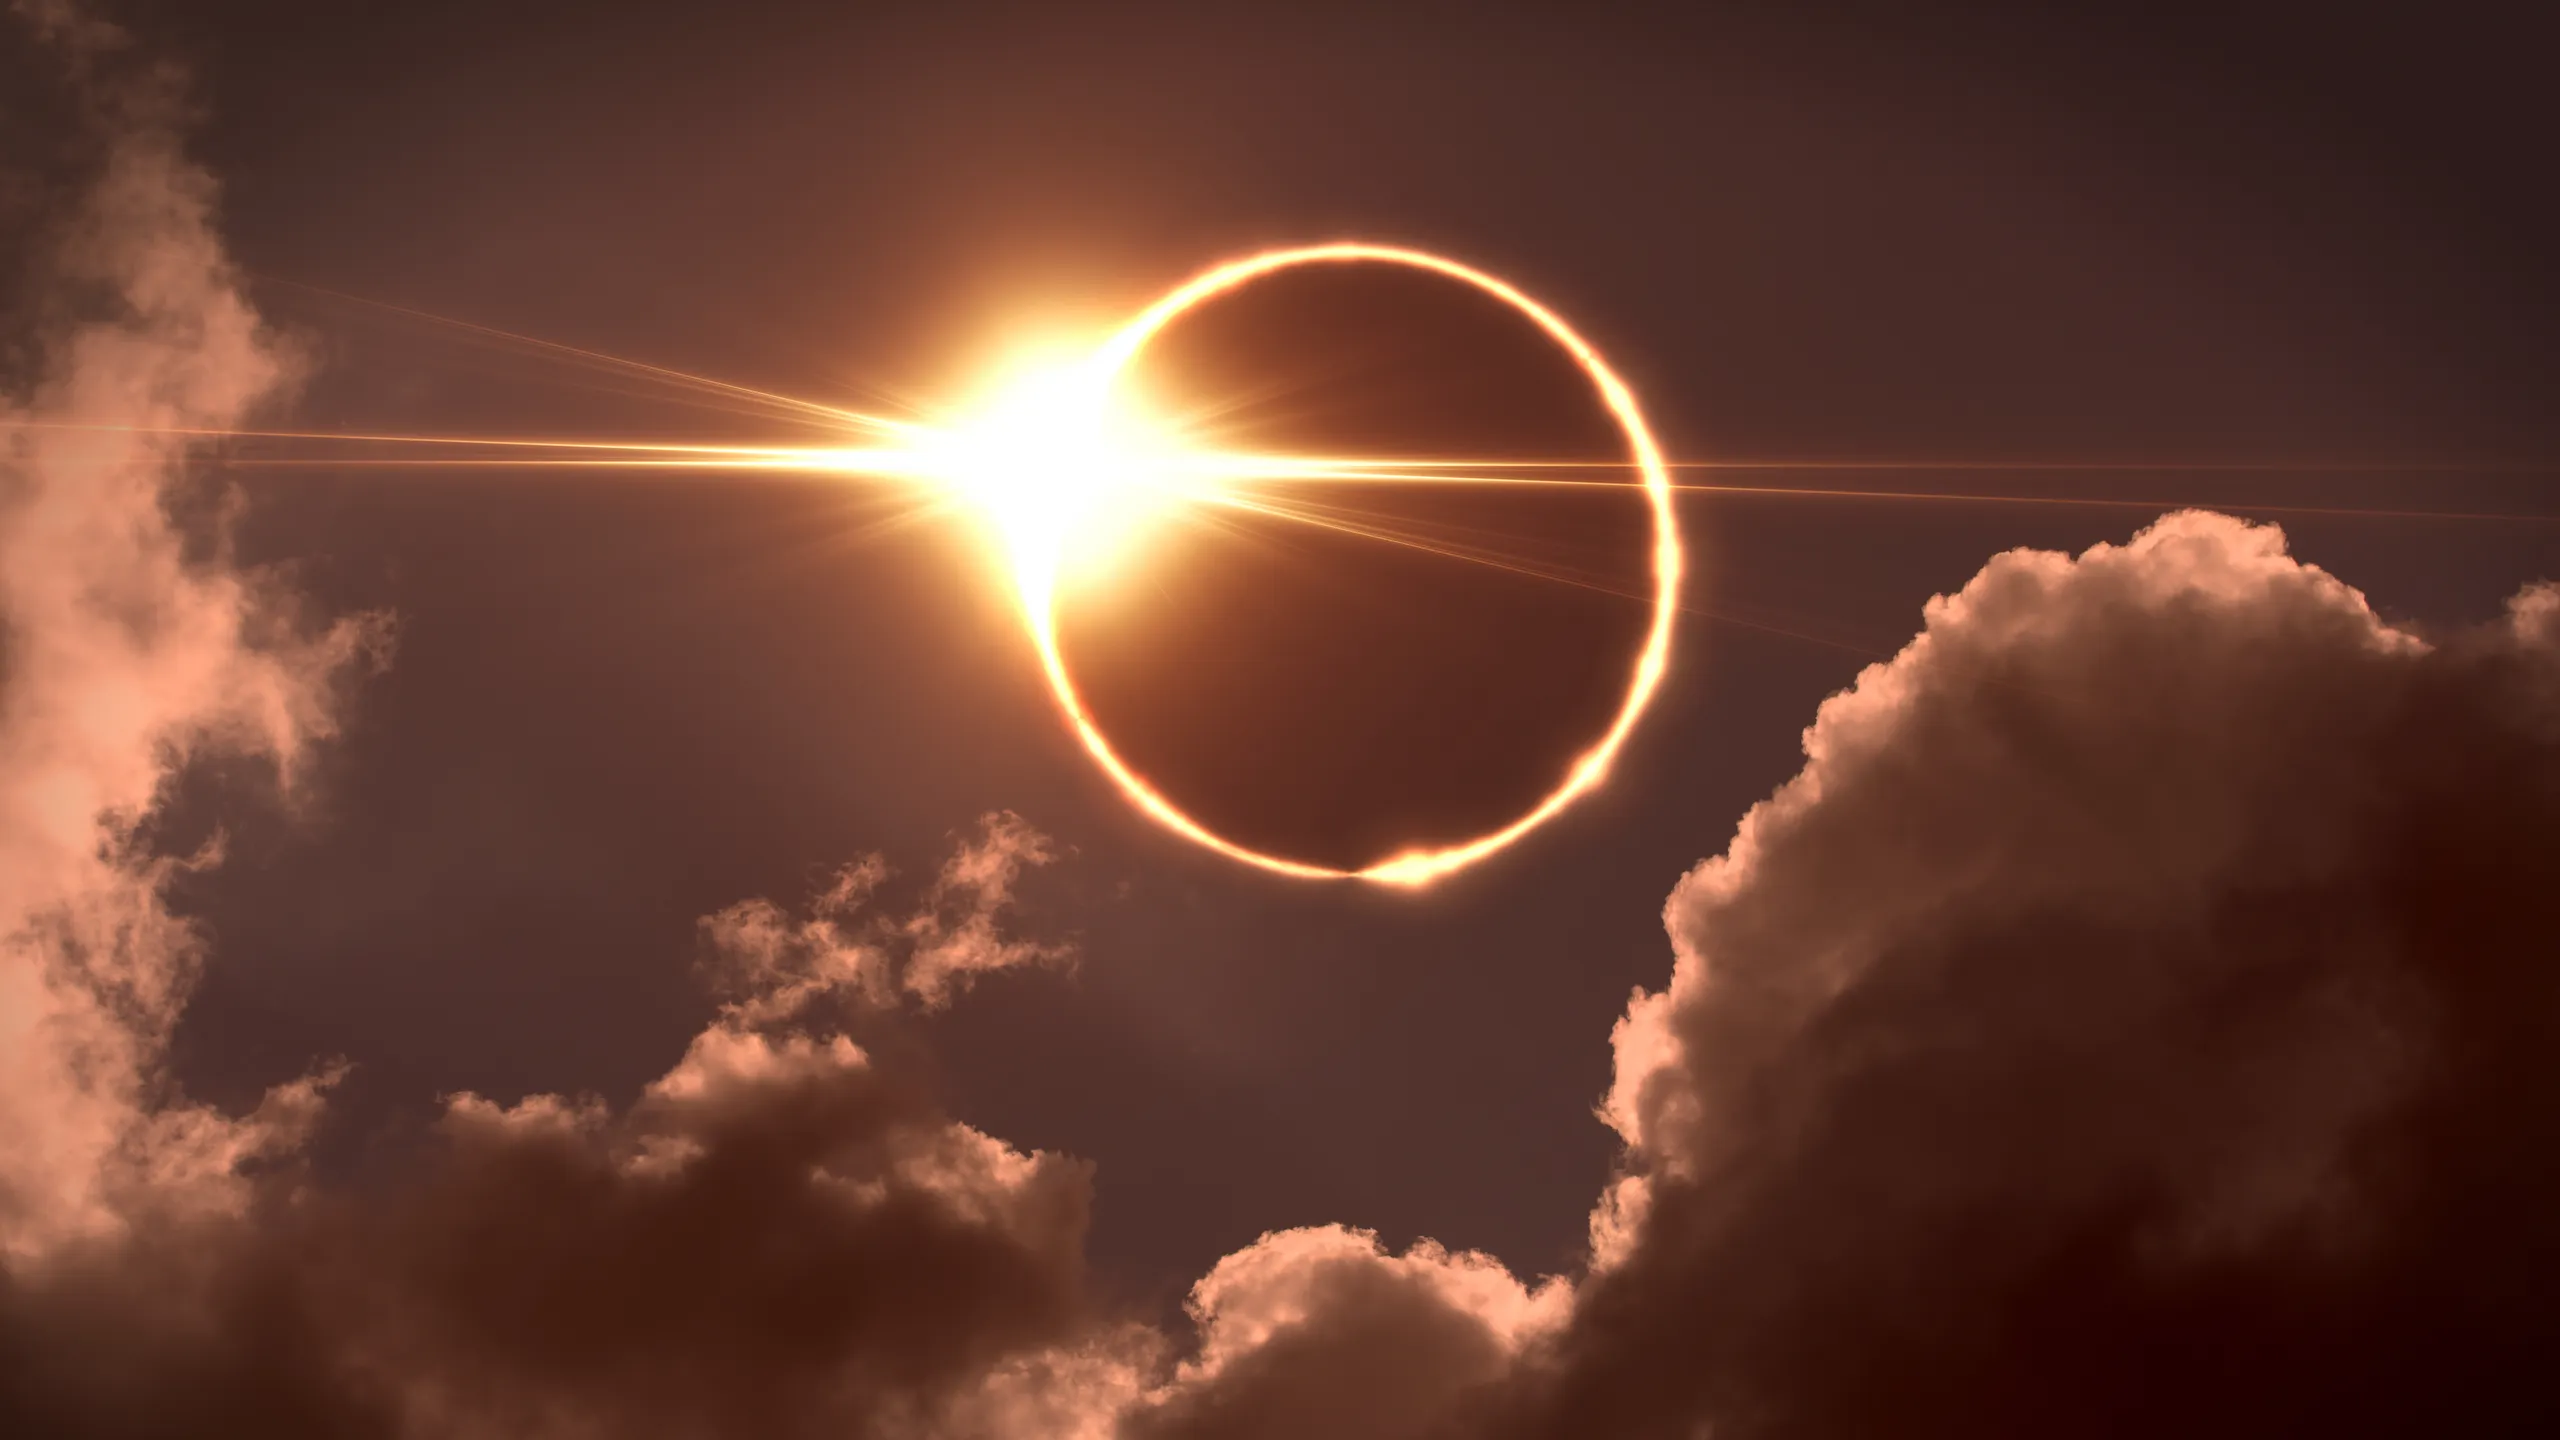 Eclipse solar claves para verlo sin arriesgar tu salud